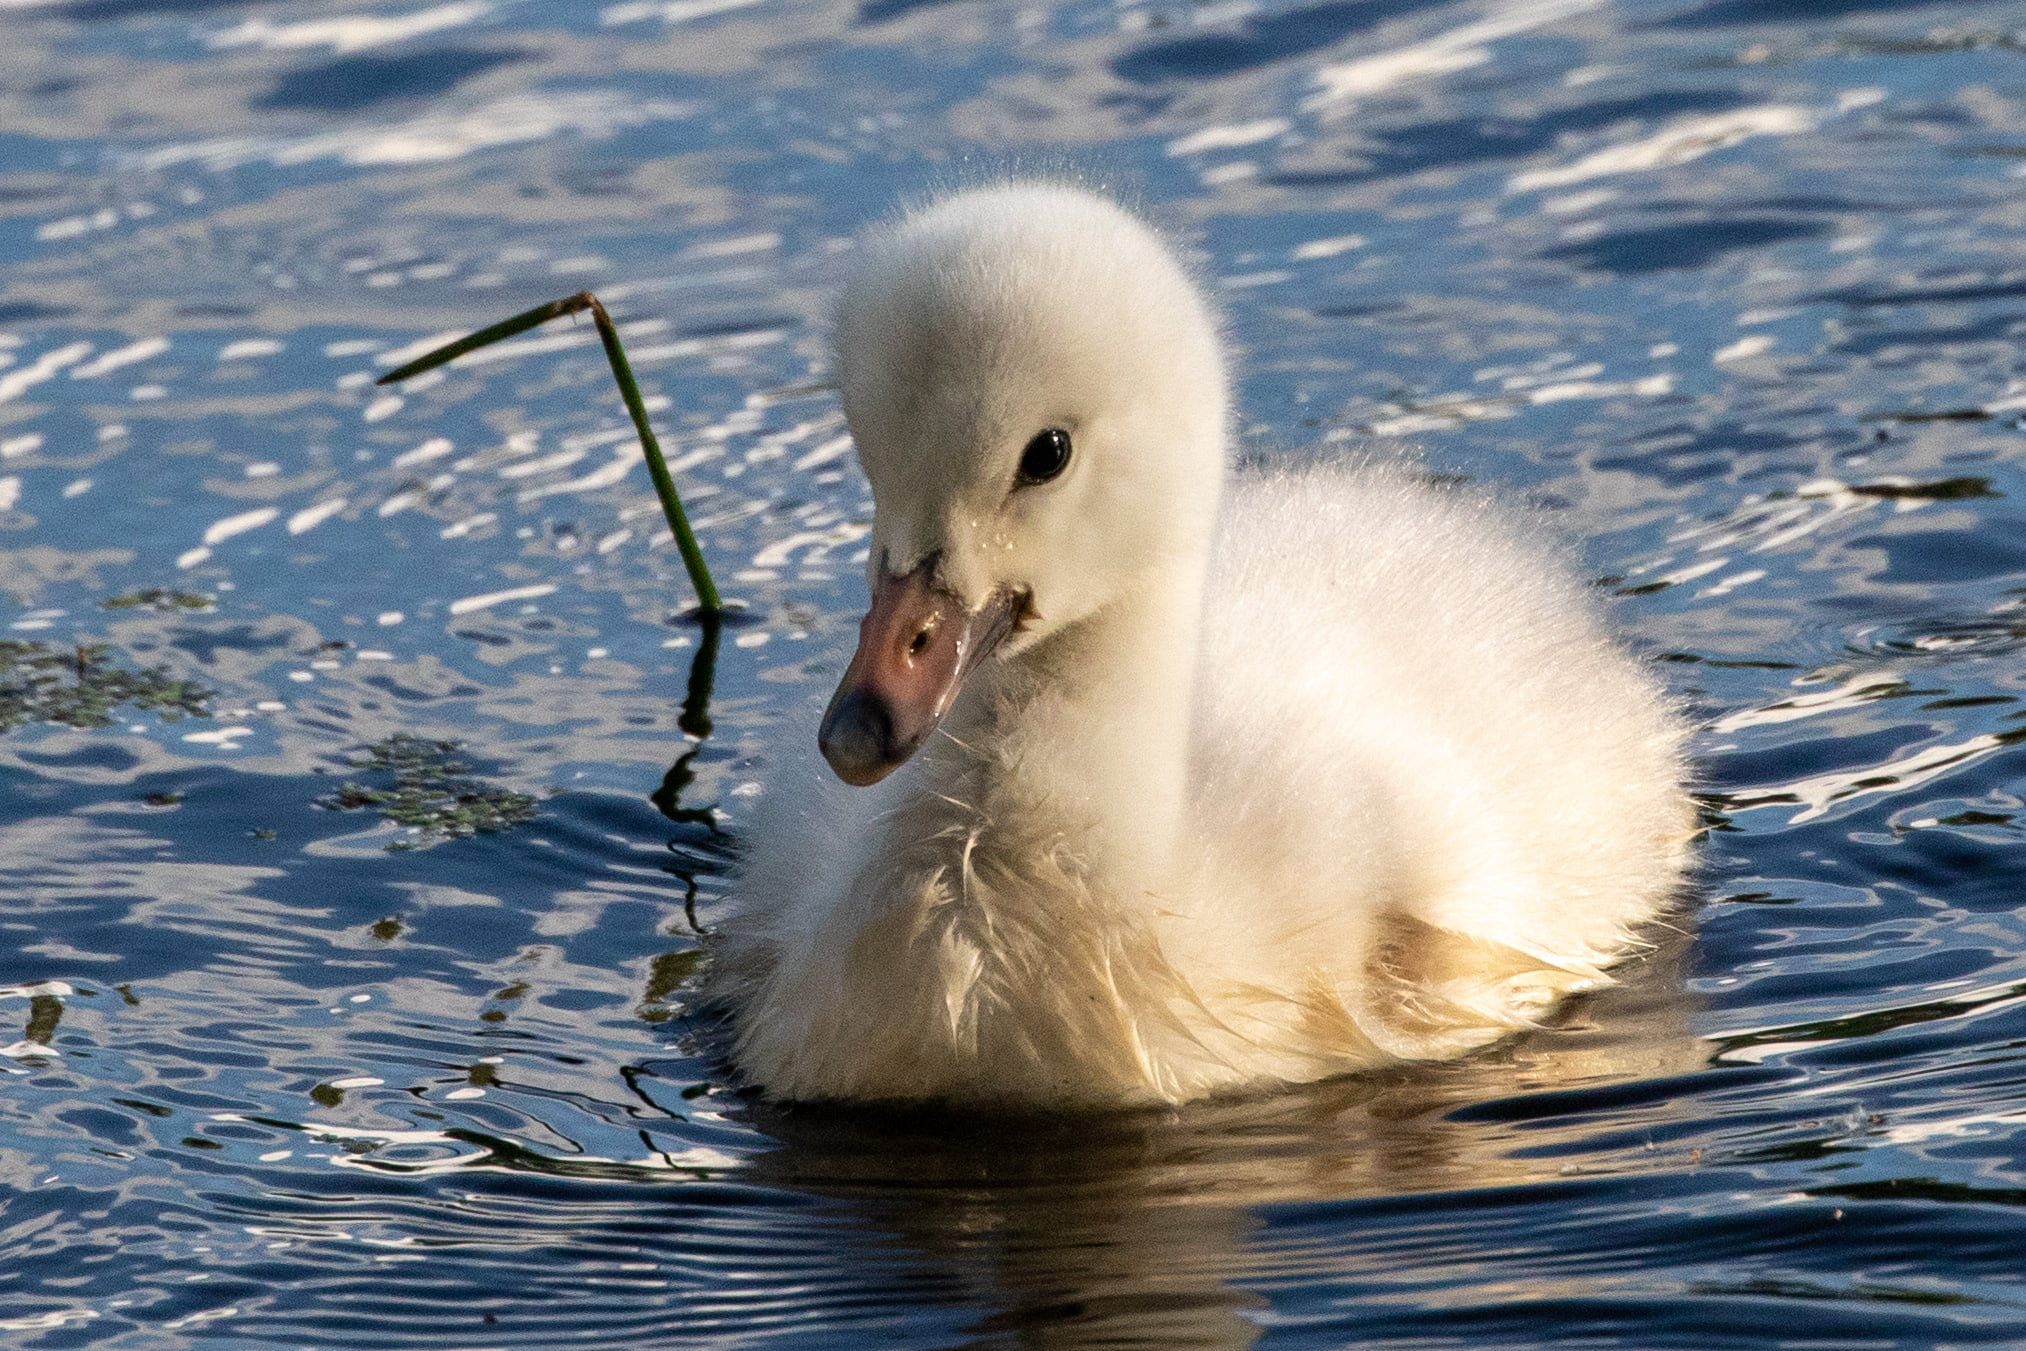 Trumpeter swan cygnet